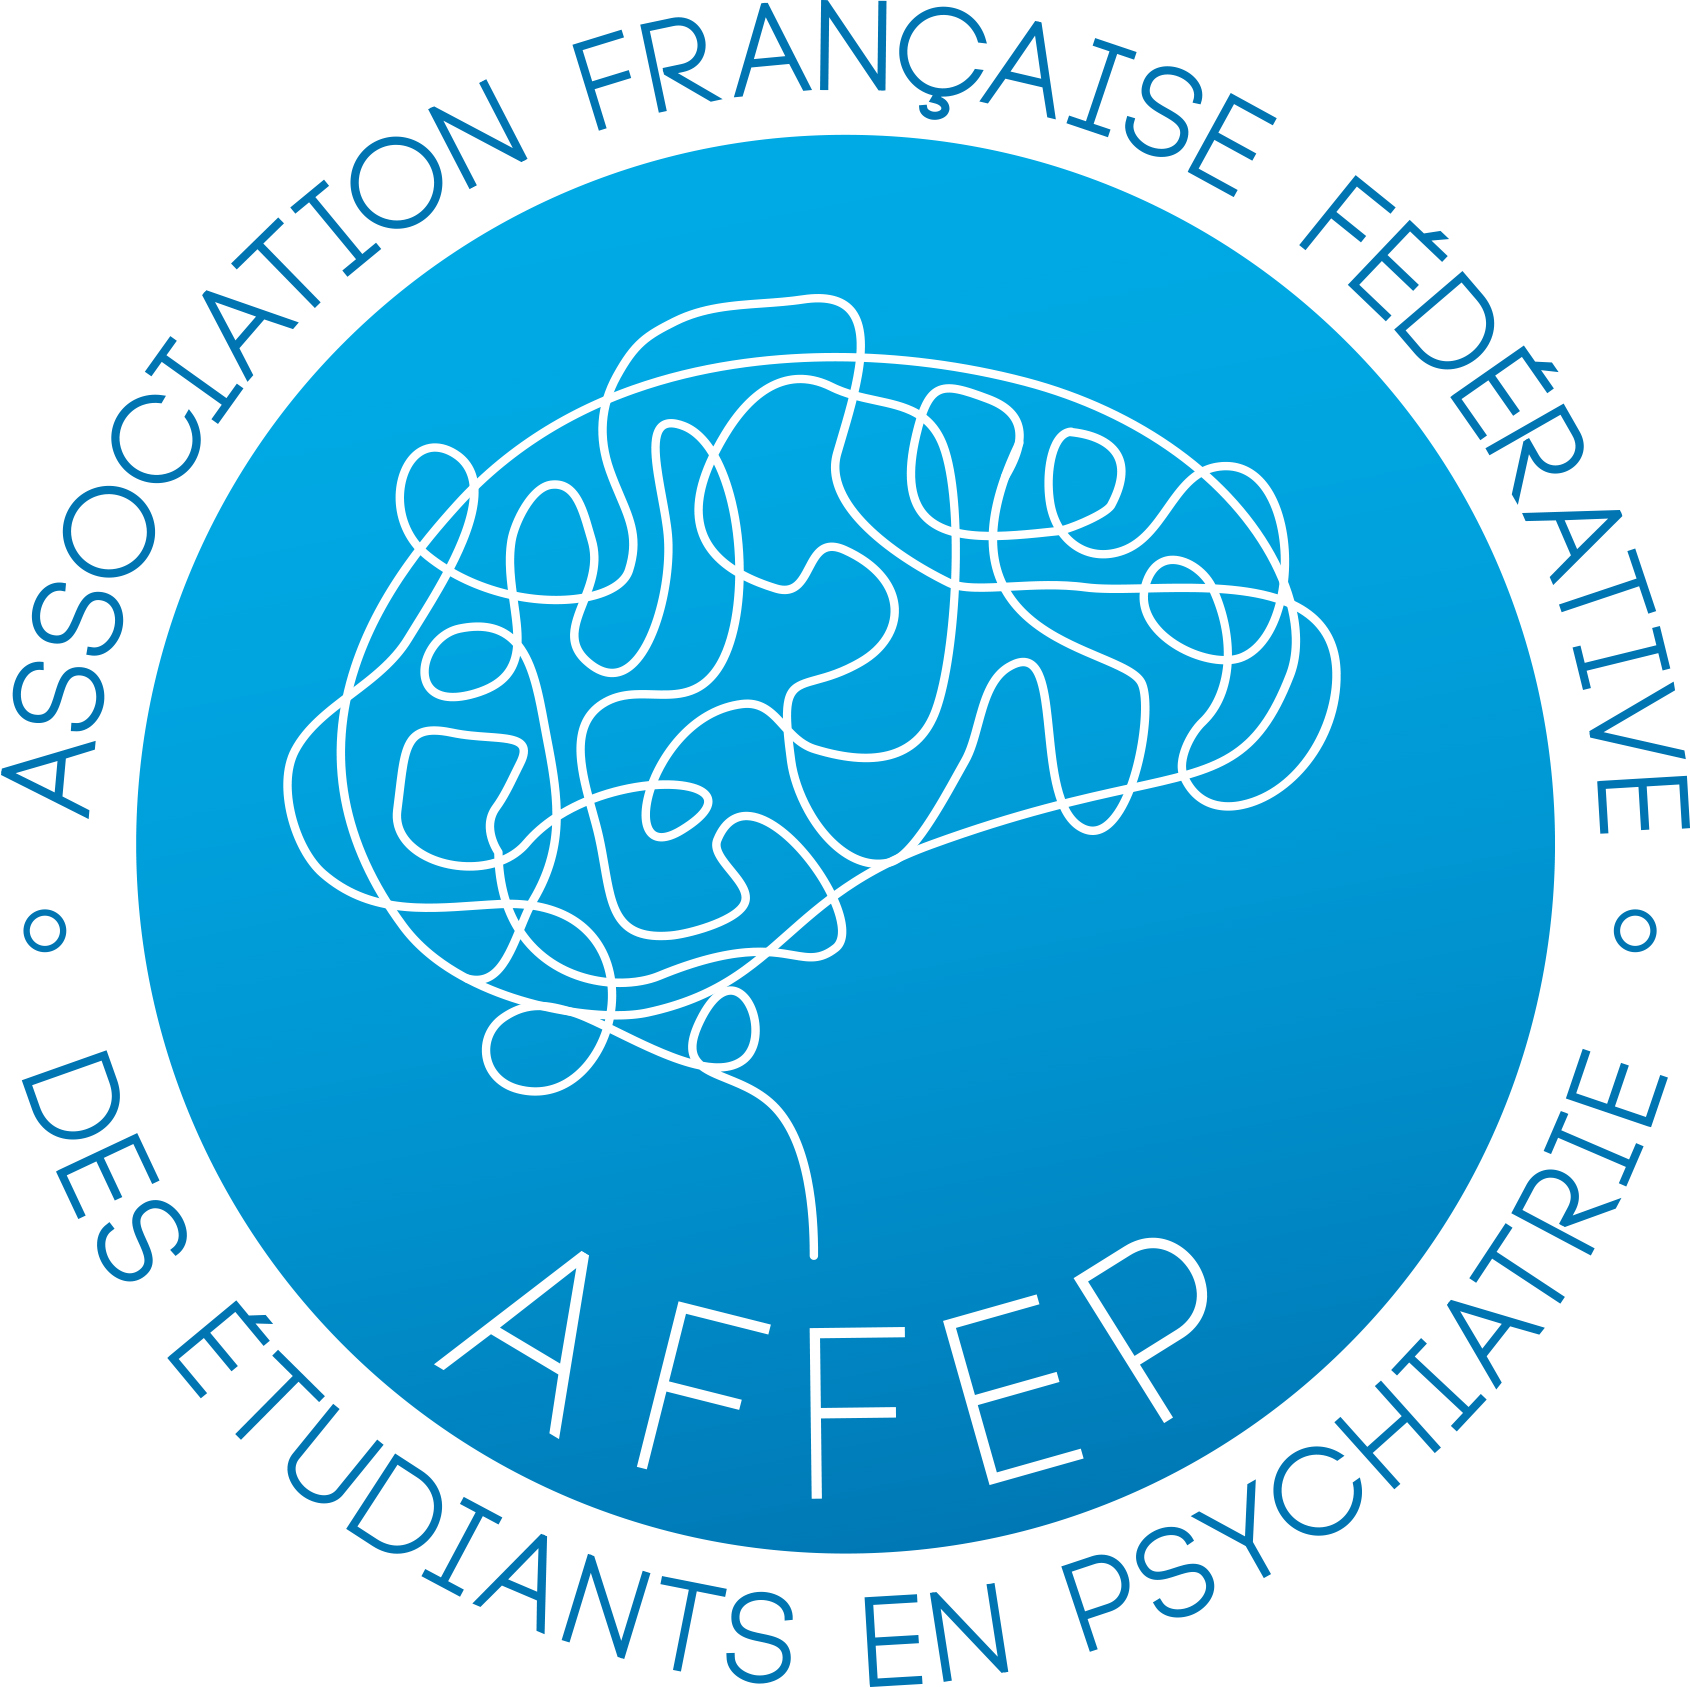 Association Française Fédérative des Etudiants en Psychiatrie